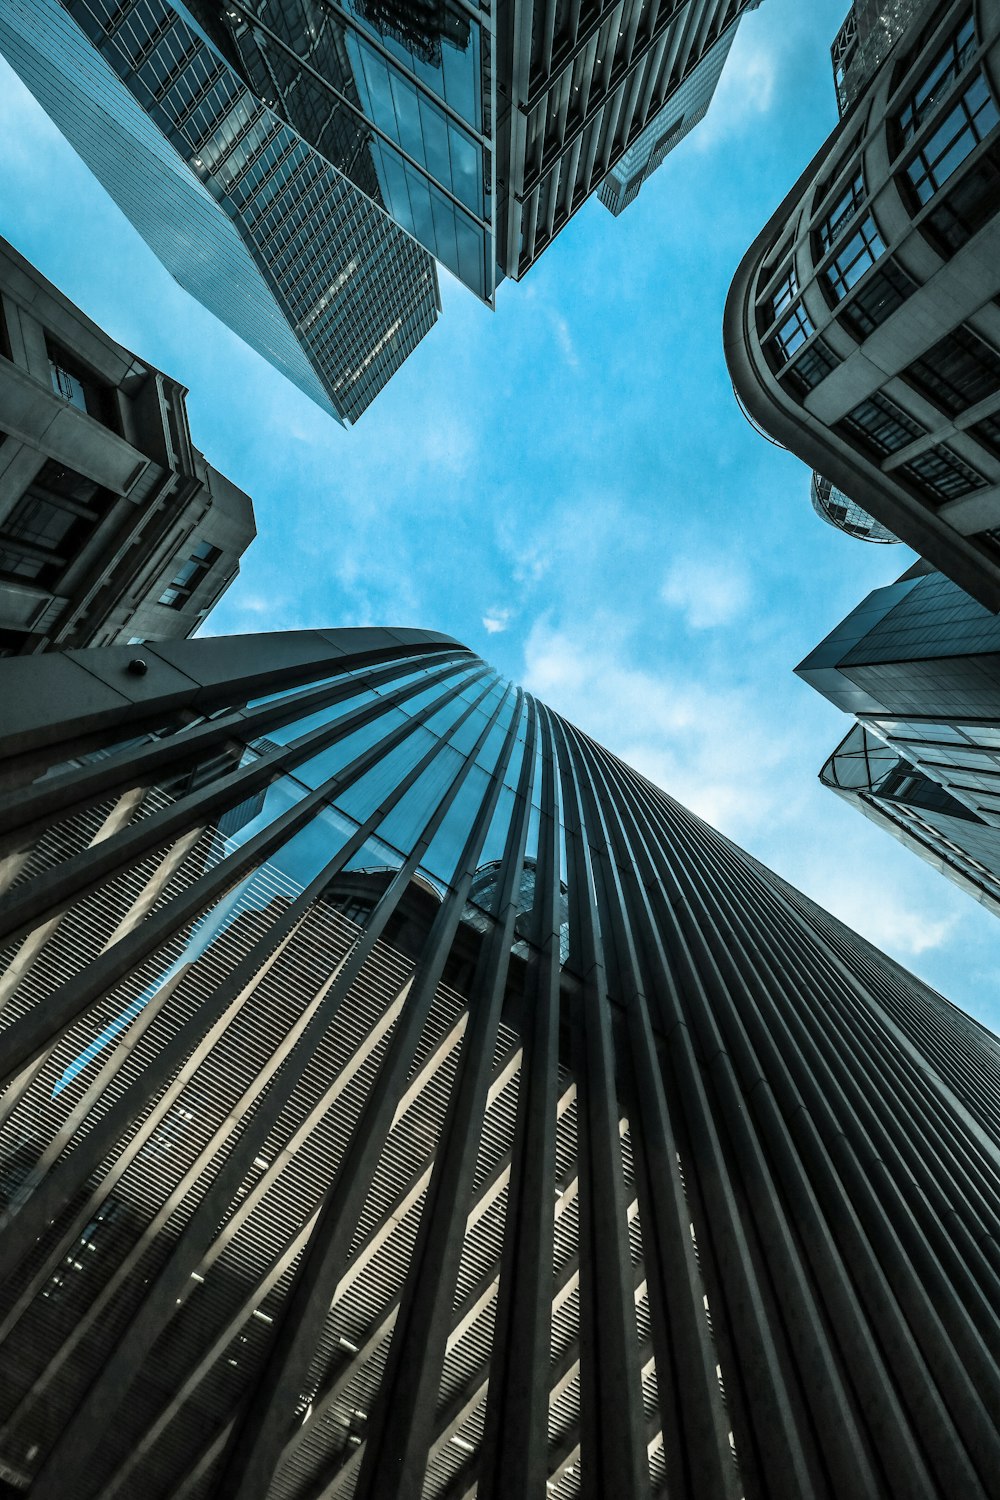 Photographie en contre-plongée d’immeubles de grande hauteur sous un ciel bleu pendant la journée